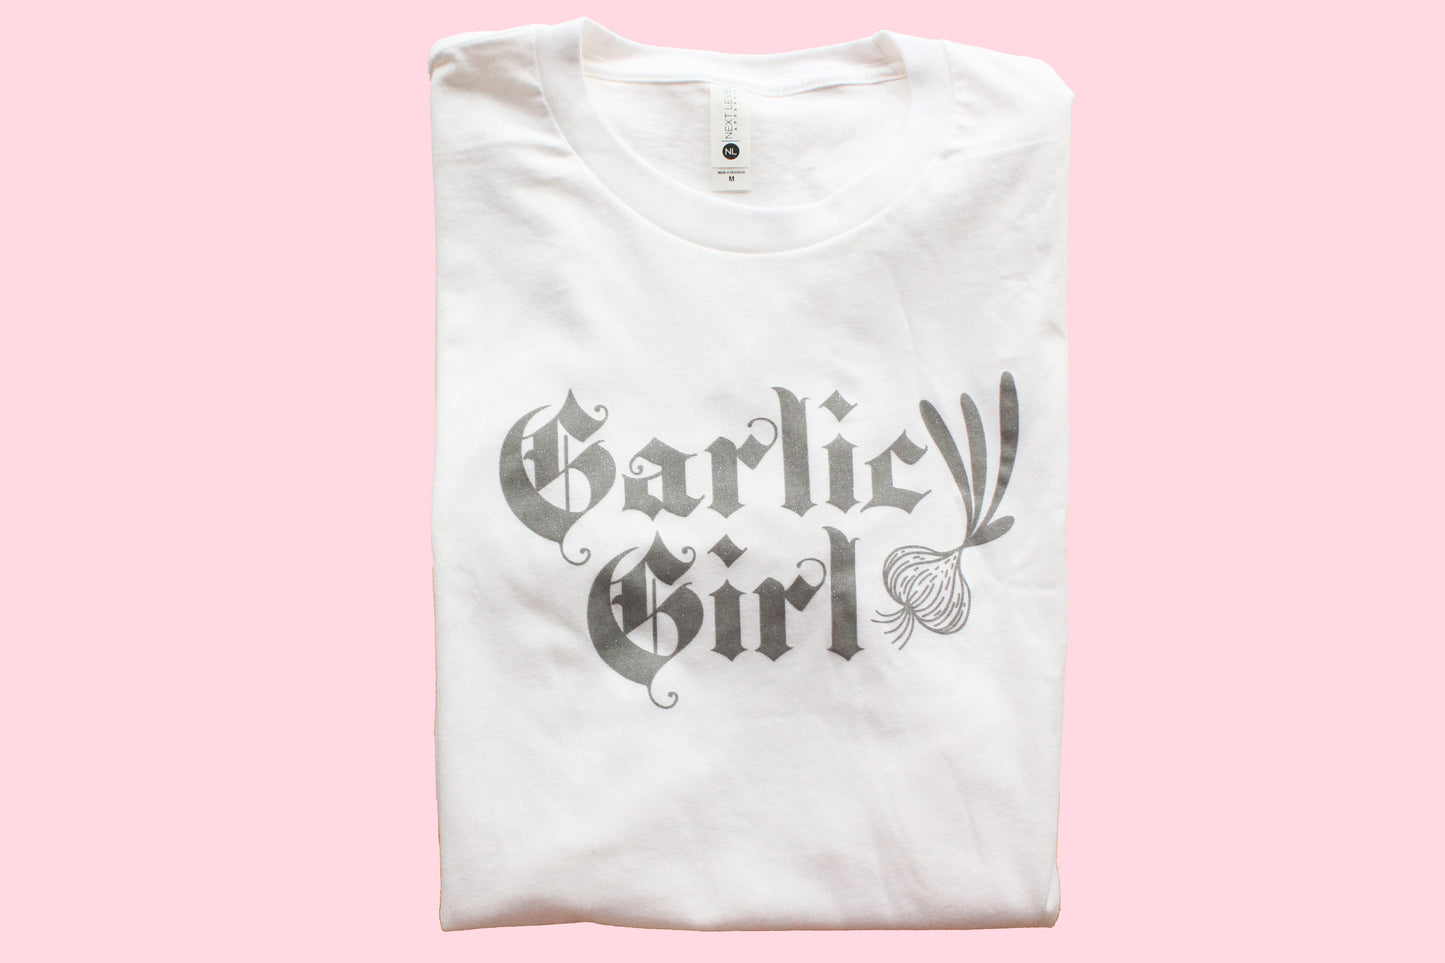 Garlic Girl Glitter Tee